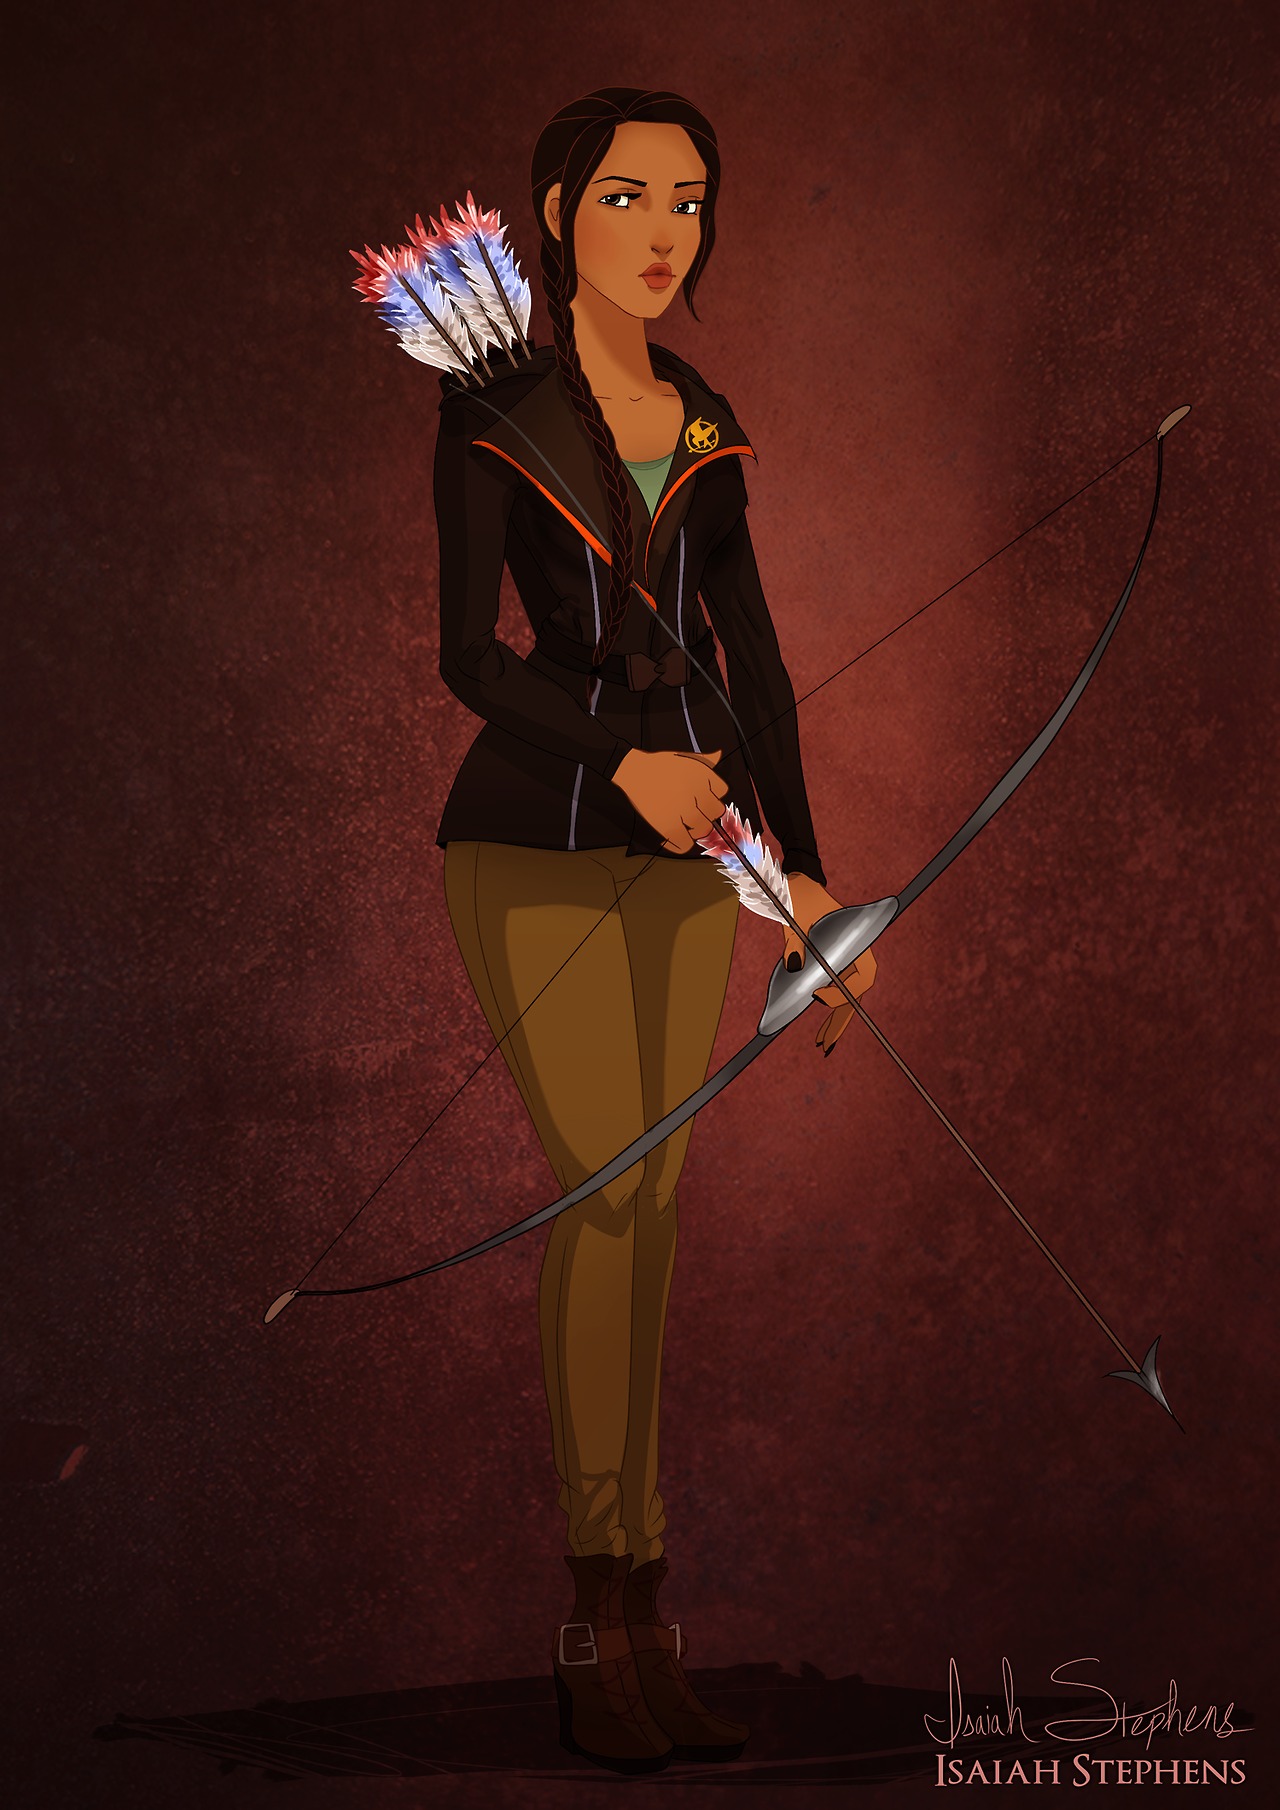 Disney’s Pocahontas As Katniss Everdeen In Artwork By Isaiah Stephens